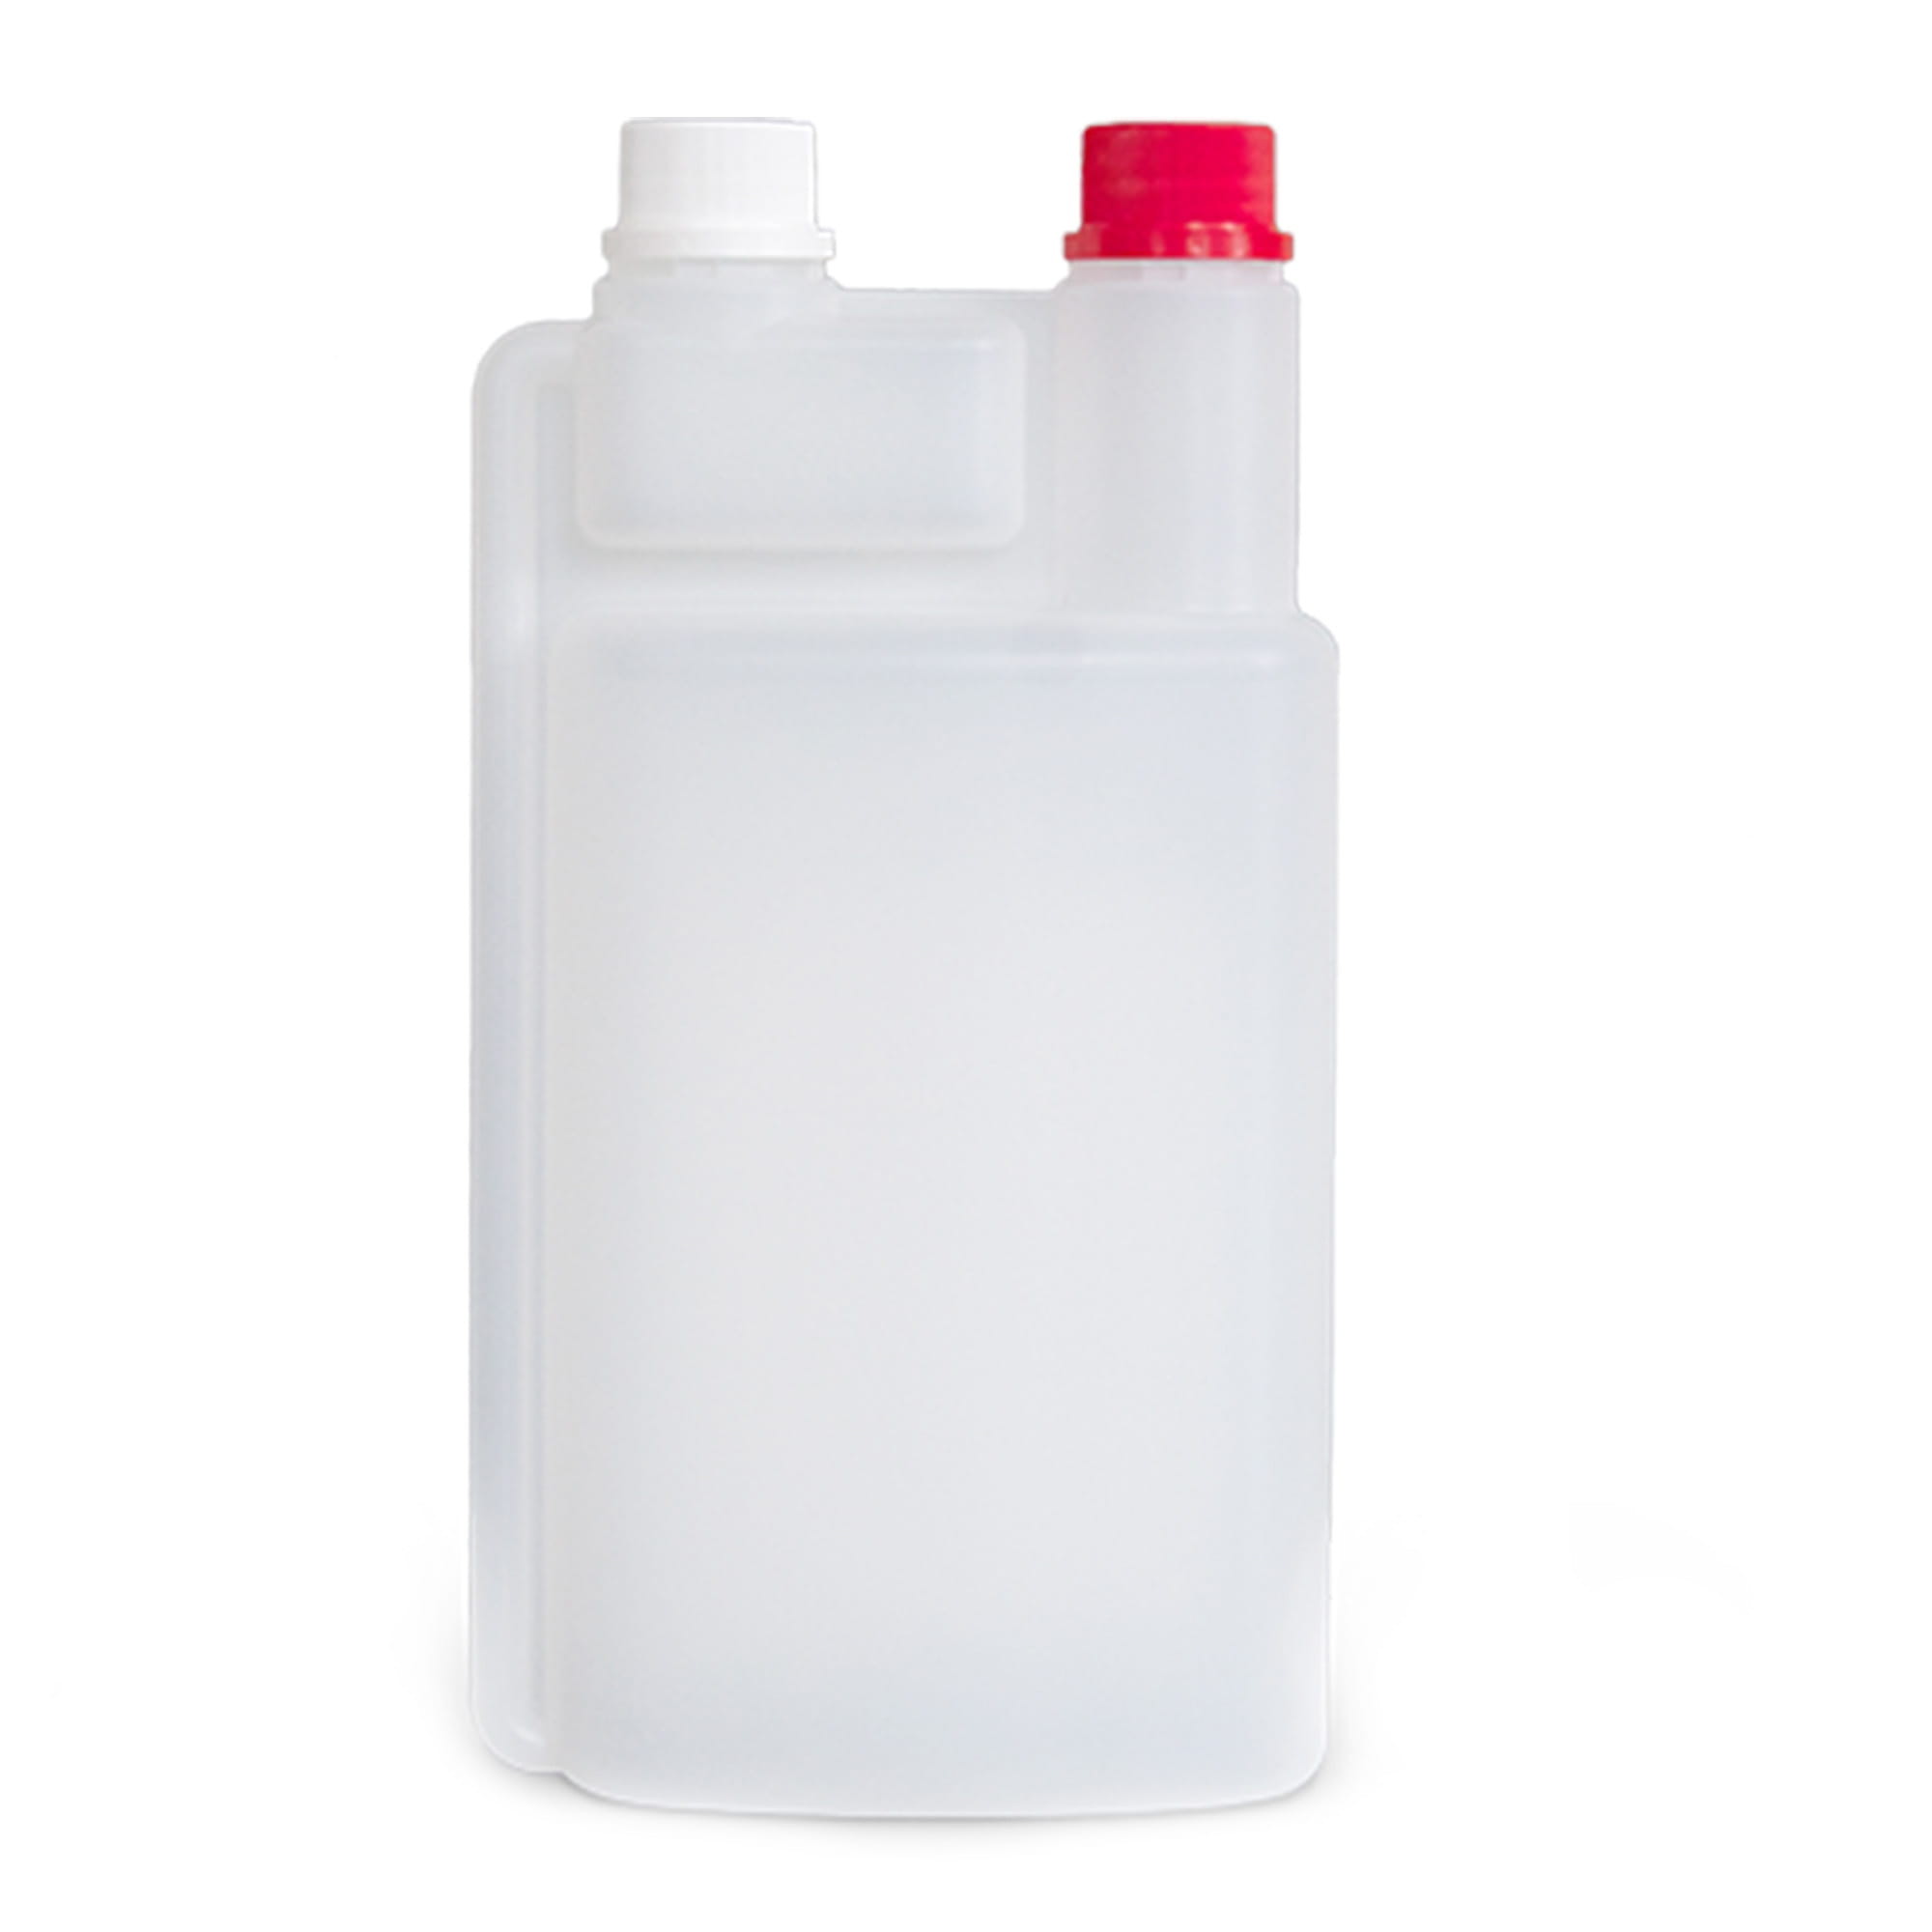 Dr. Schumacher Dosierflasche 1 Liter 60 ml Kammer 00-904-010_1